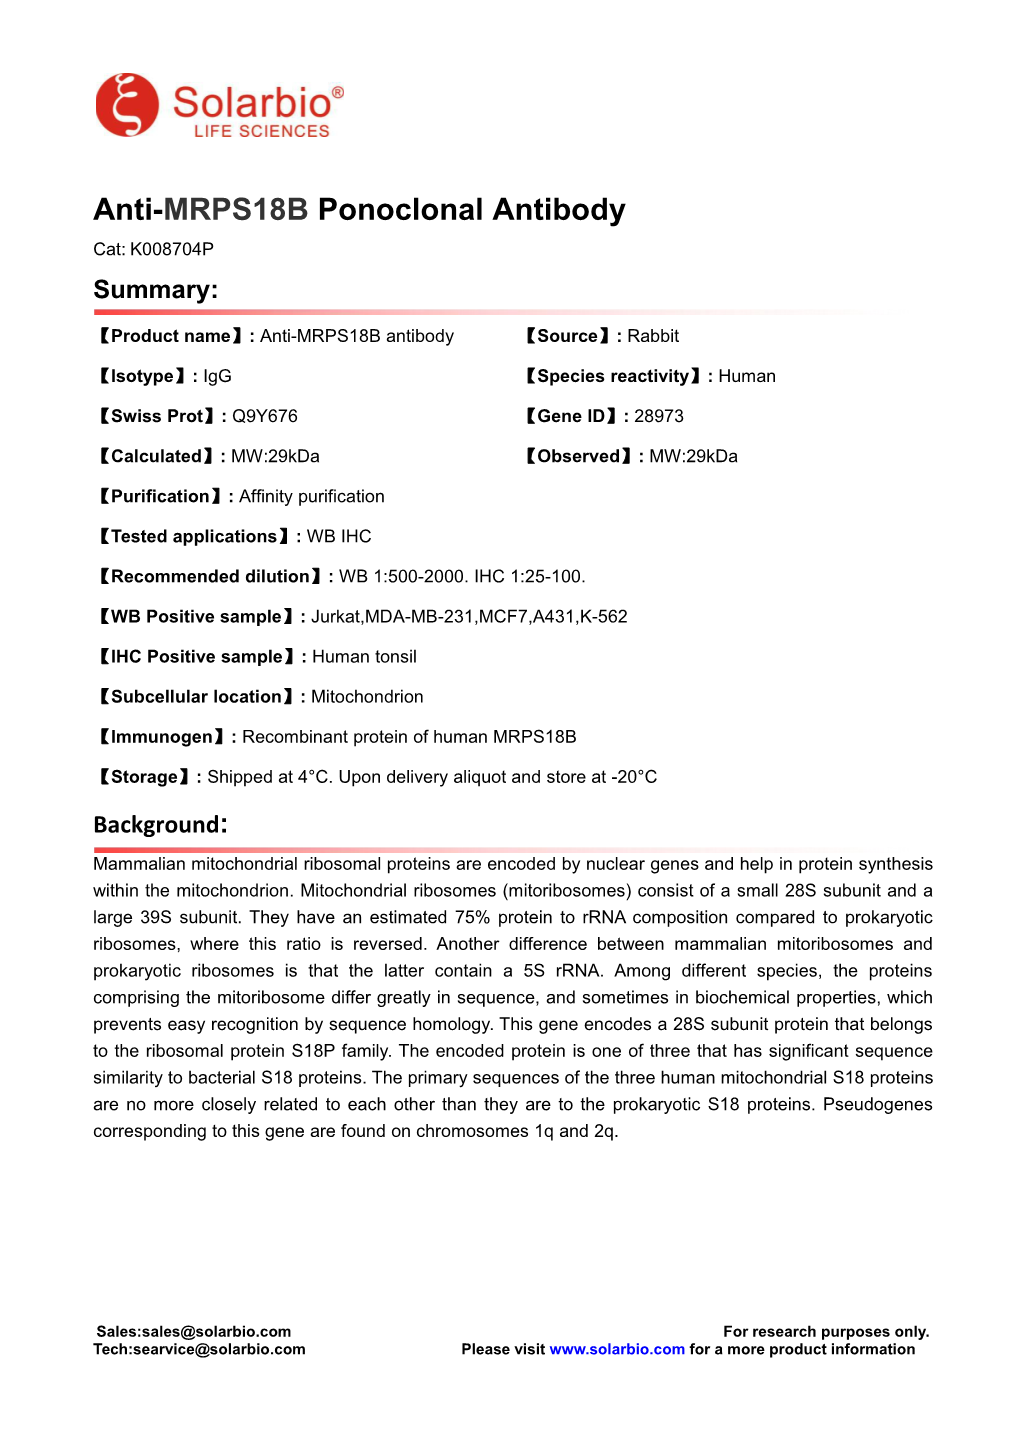 Anti-MRPS18B Ponoclonal Antibody Cat: K008704P Summary